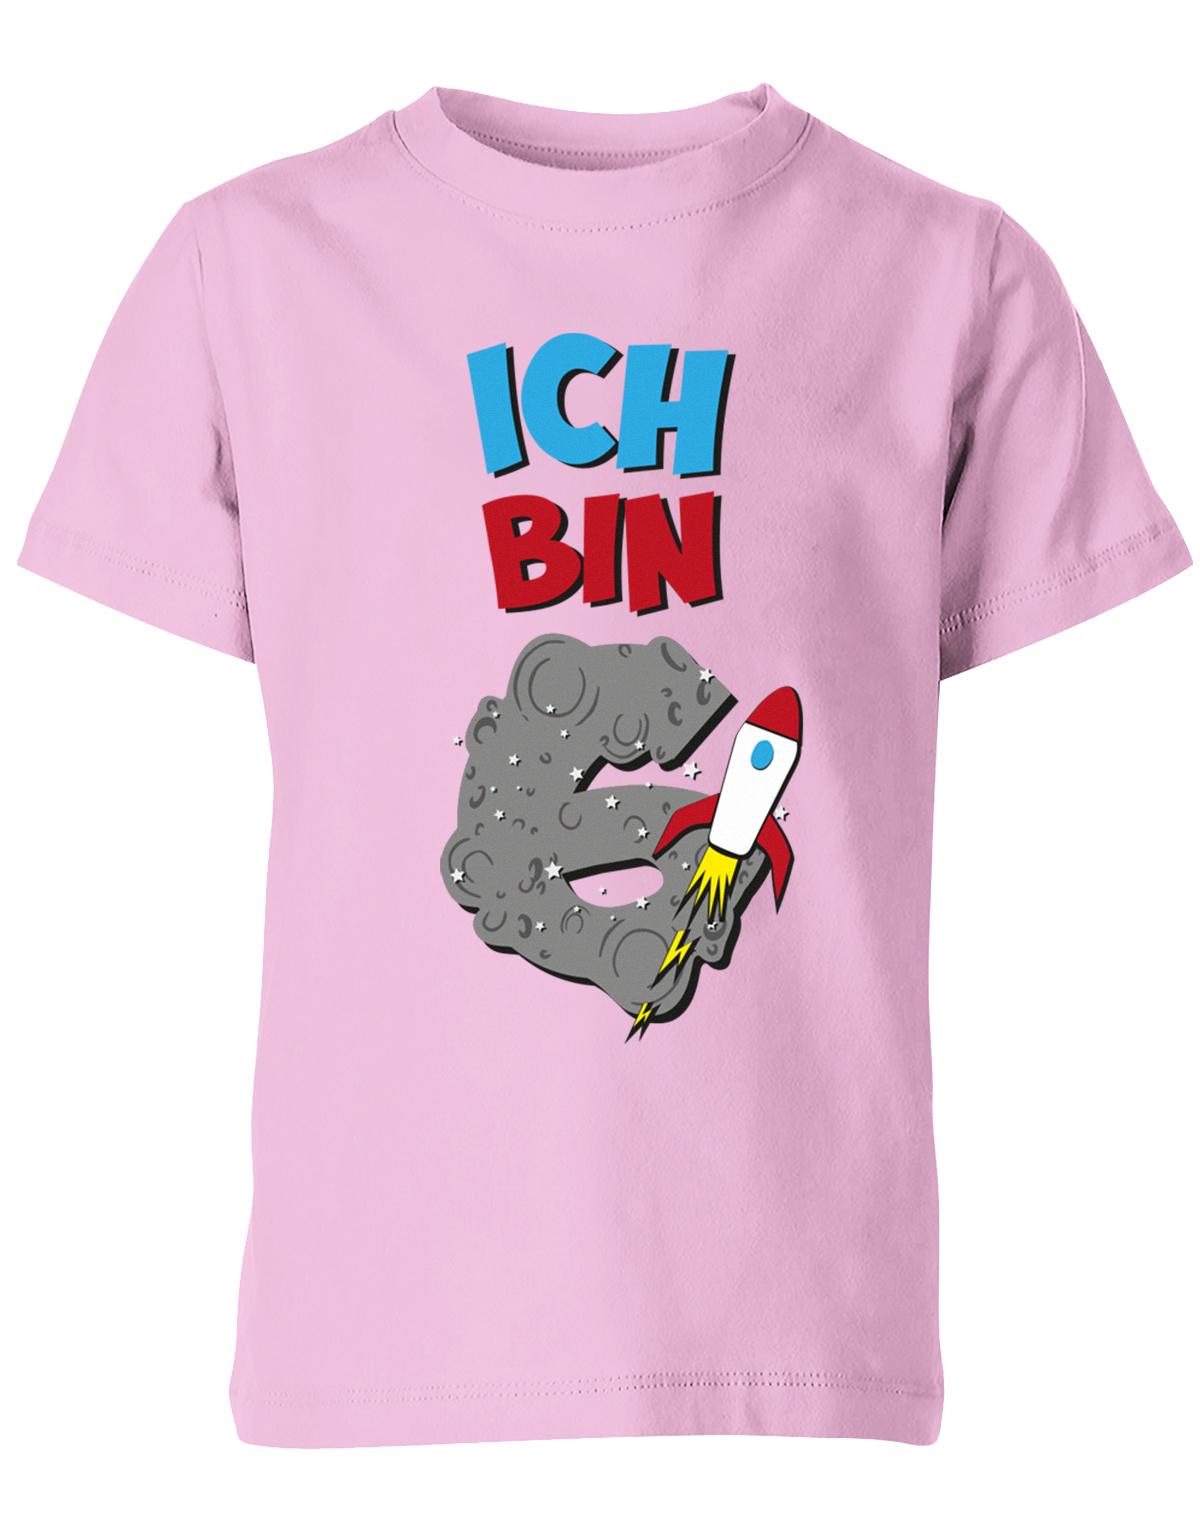 ich-bin-6-weltraum-rakete-planet-geburtstag-kinder-shirt-rosa